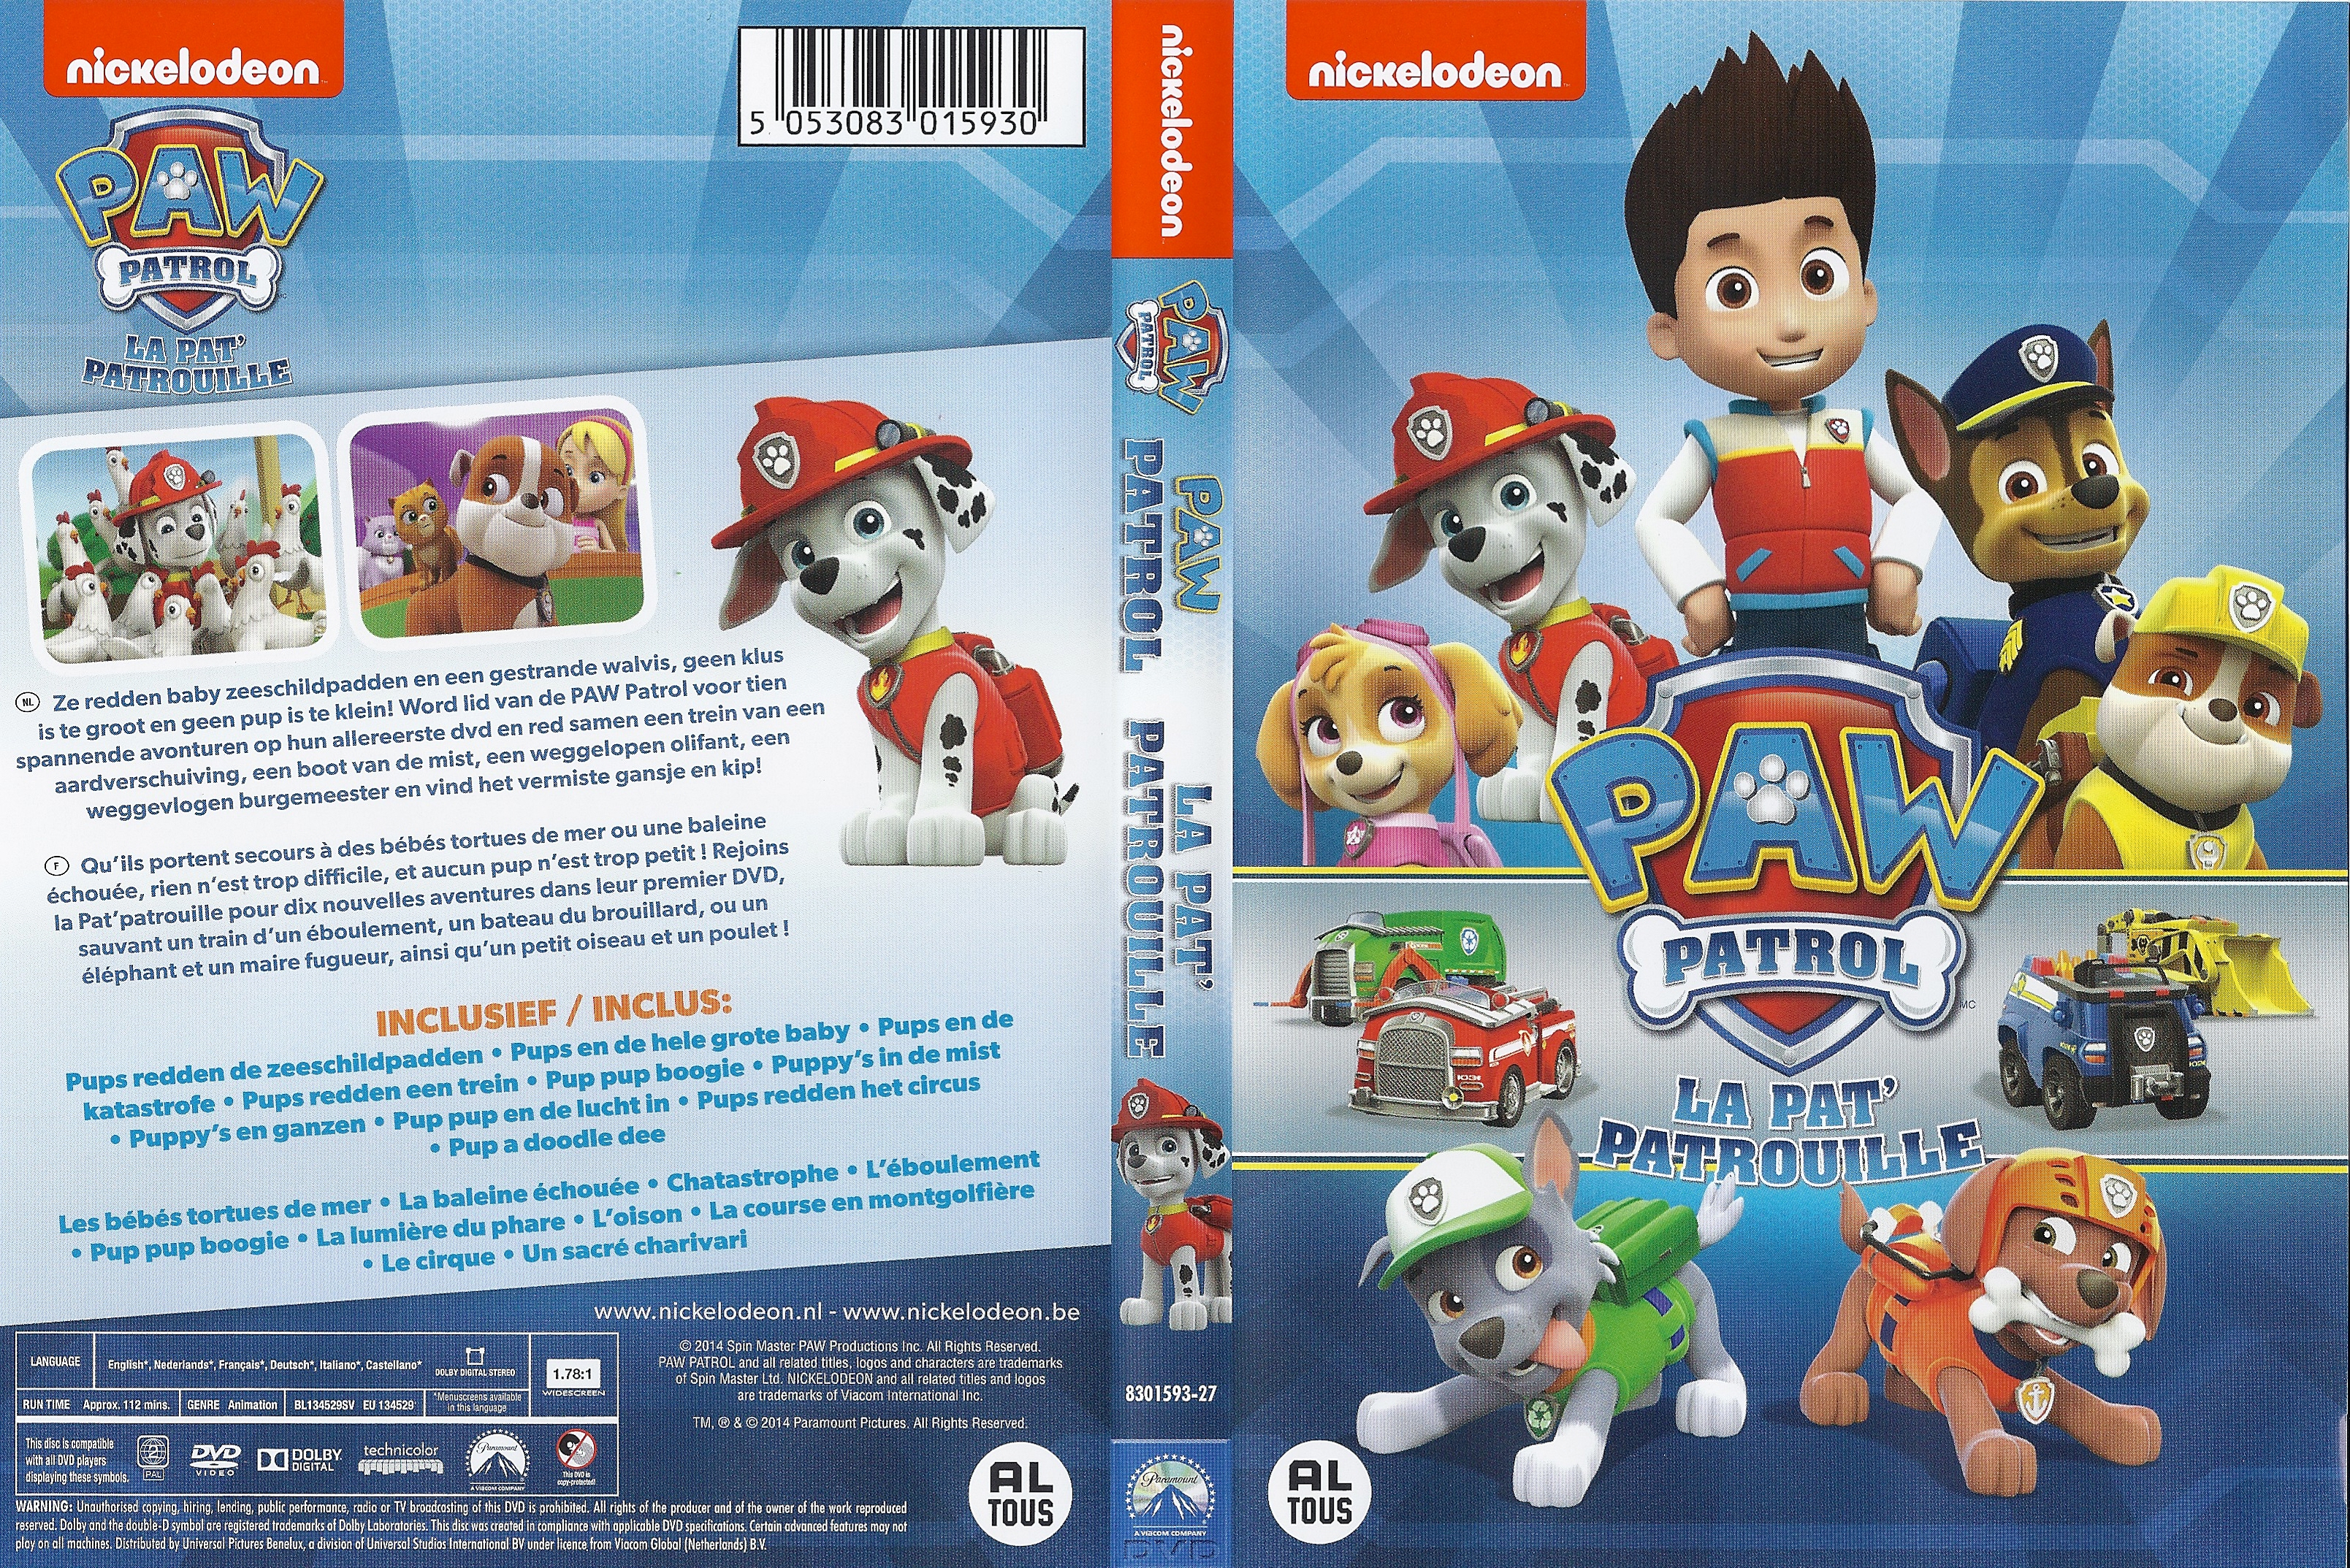 Jaquette DVD Paw Patrol La Pat